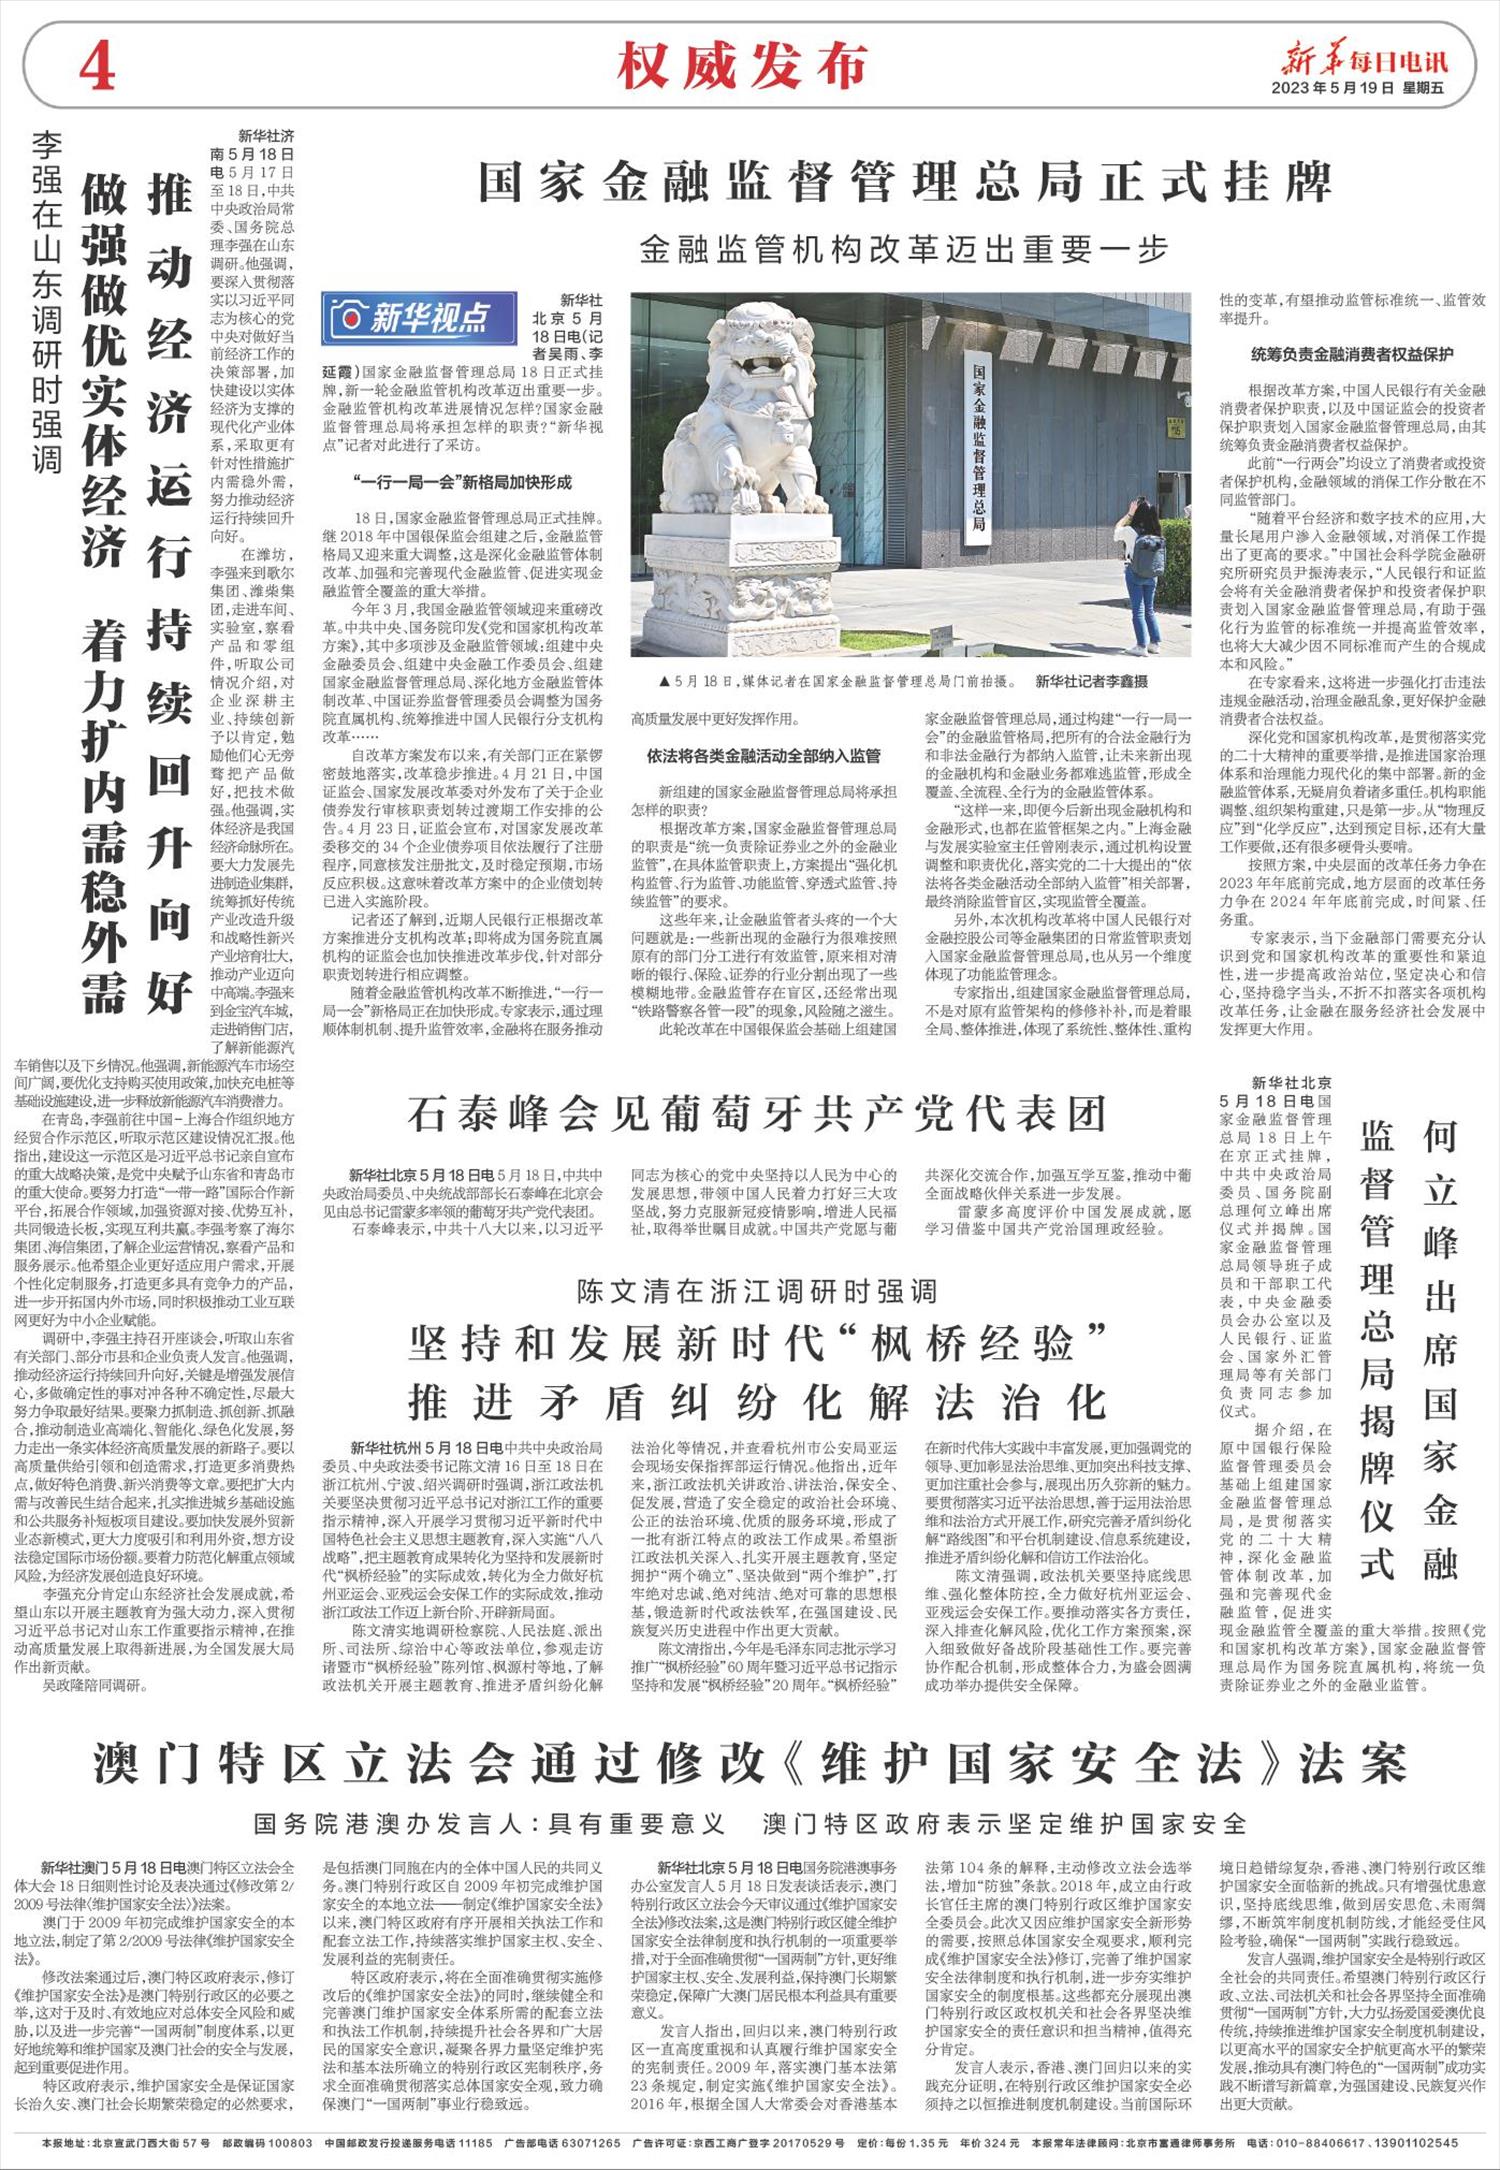 新华每日电讯-微报纸-2023年05月19日